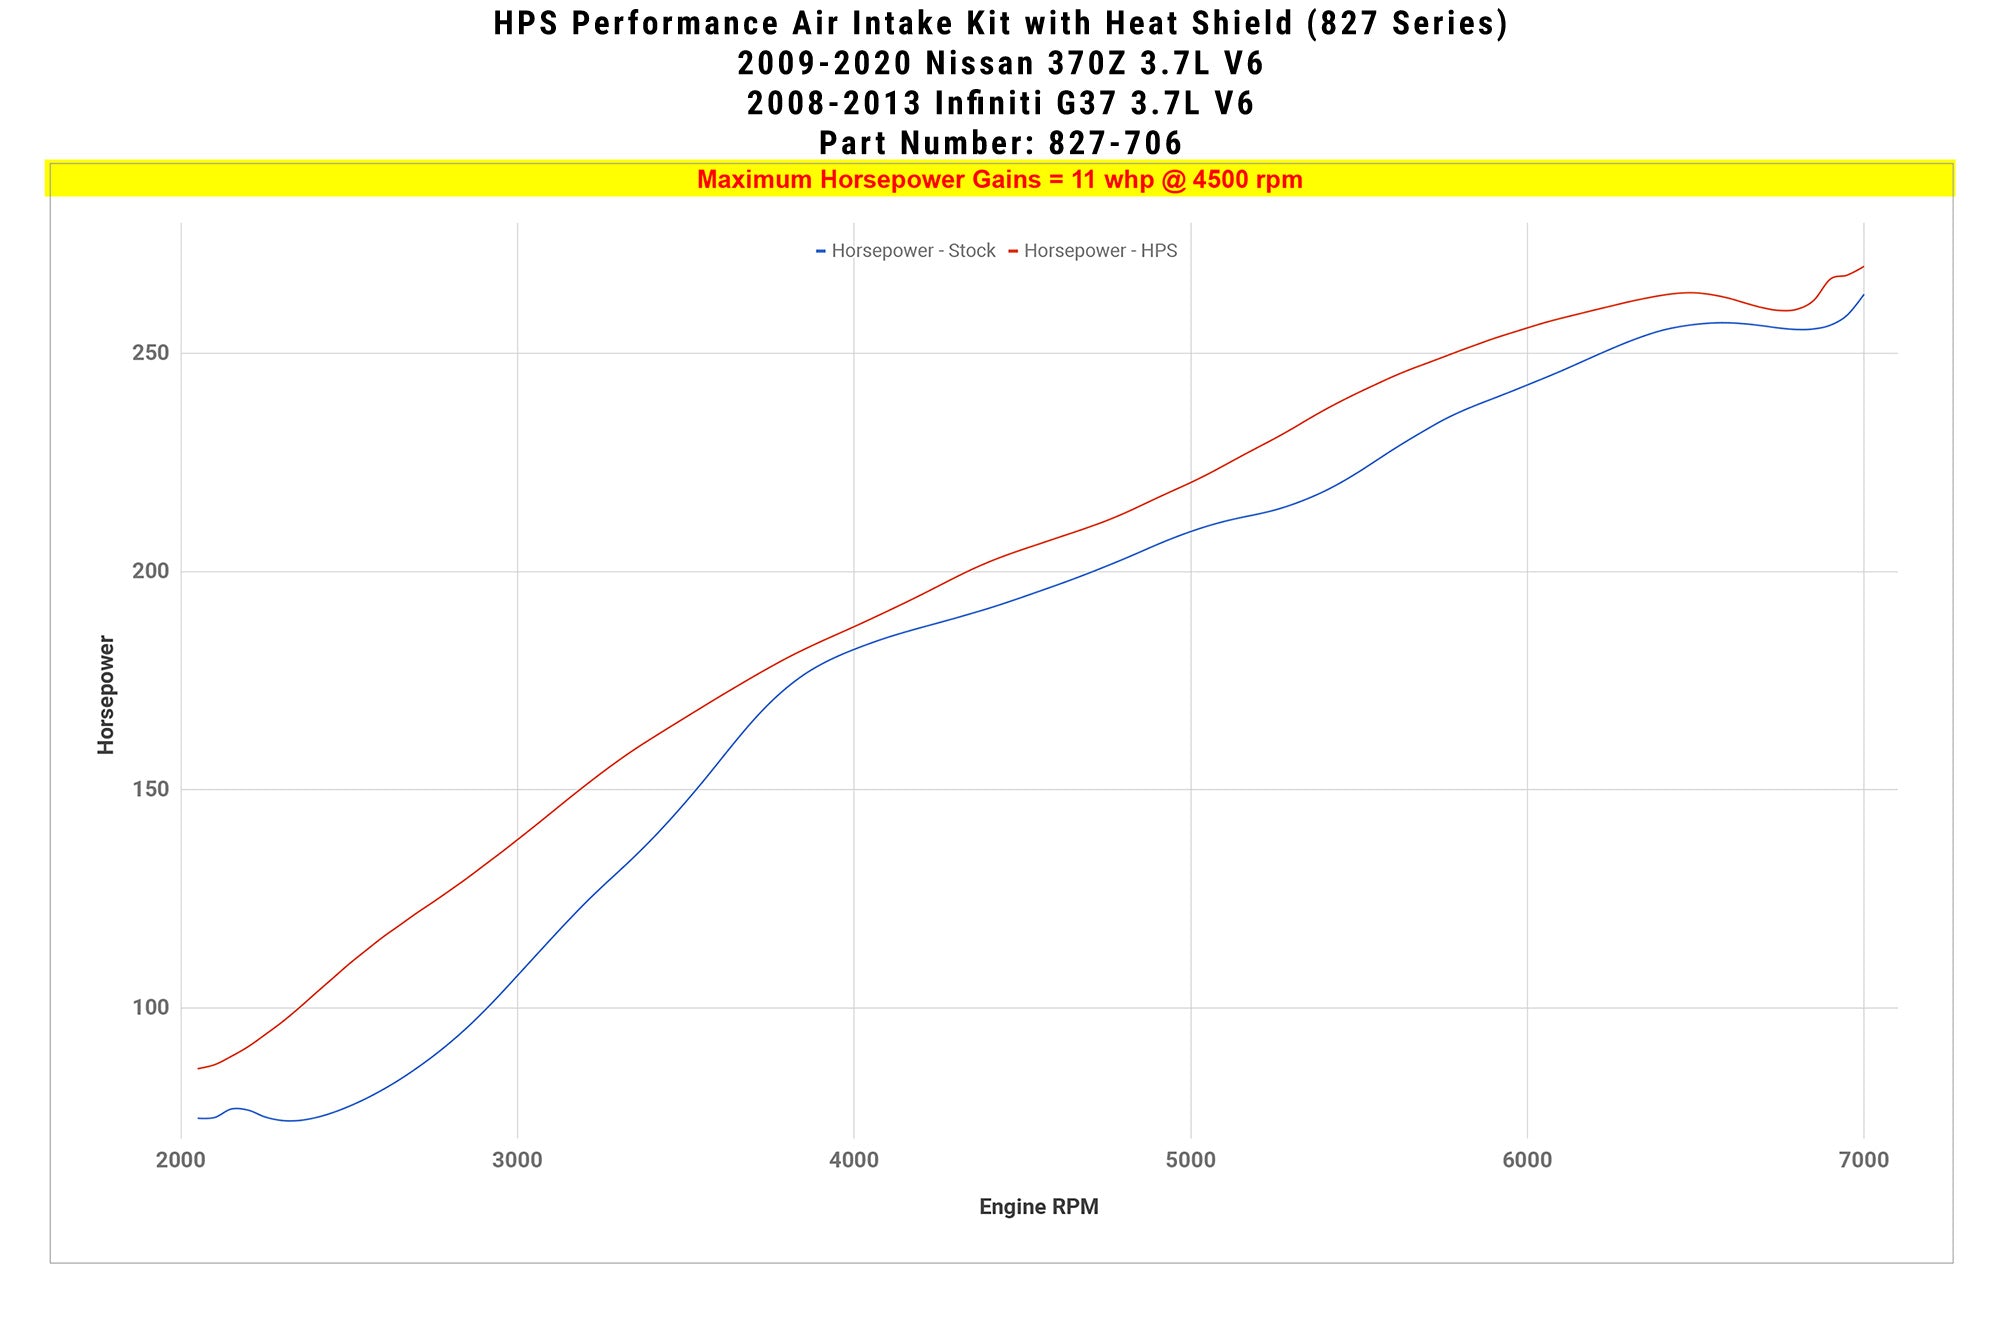 HPS Shortram Air Intake Kit 827-706 increase horsepower +11 whp on 2009-2020 Nissan 370Z 3.7L V6 Z34